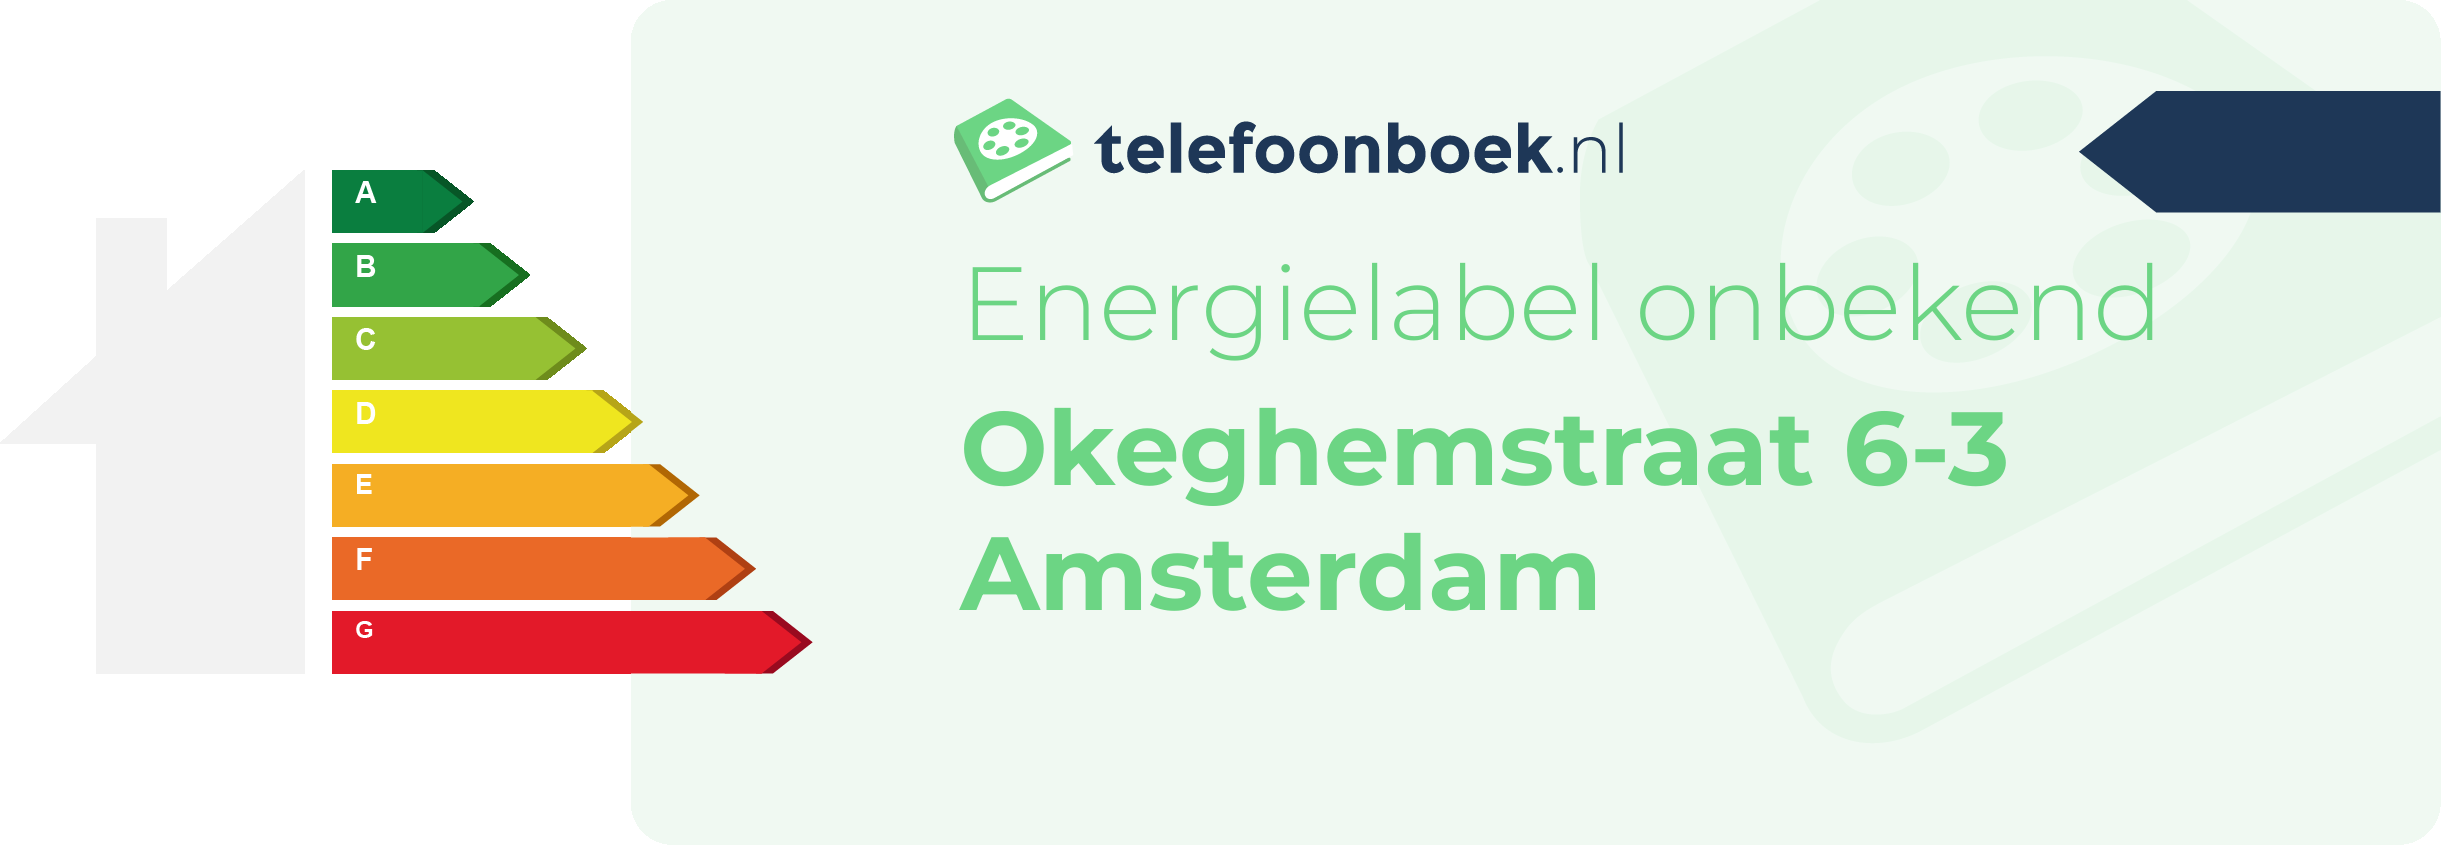 Energielabel Okeghemstraat 6-3 Amsterdam